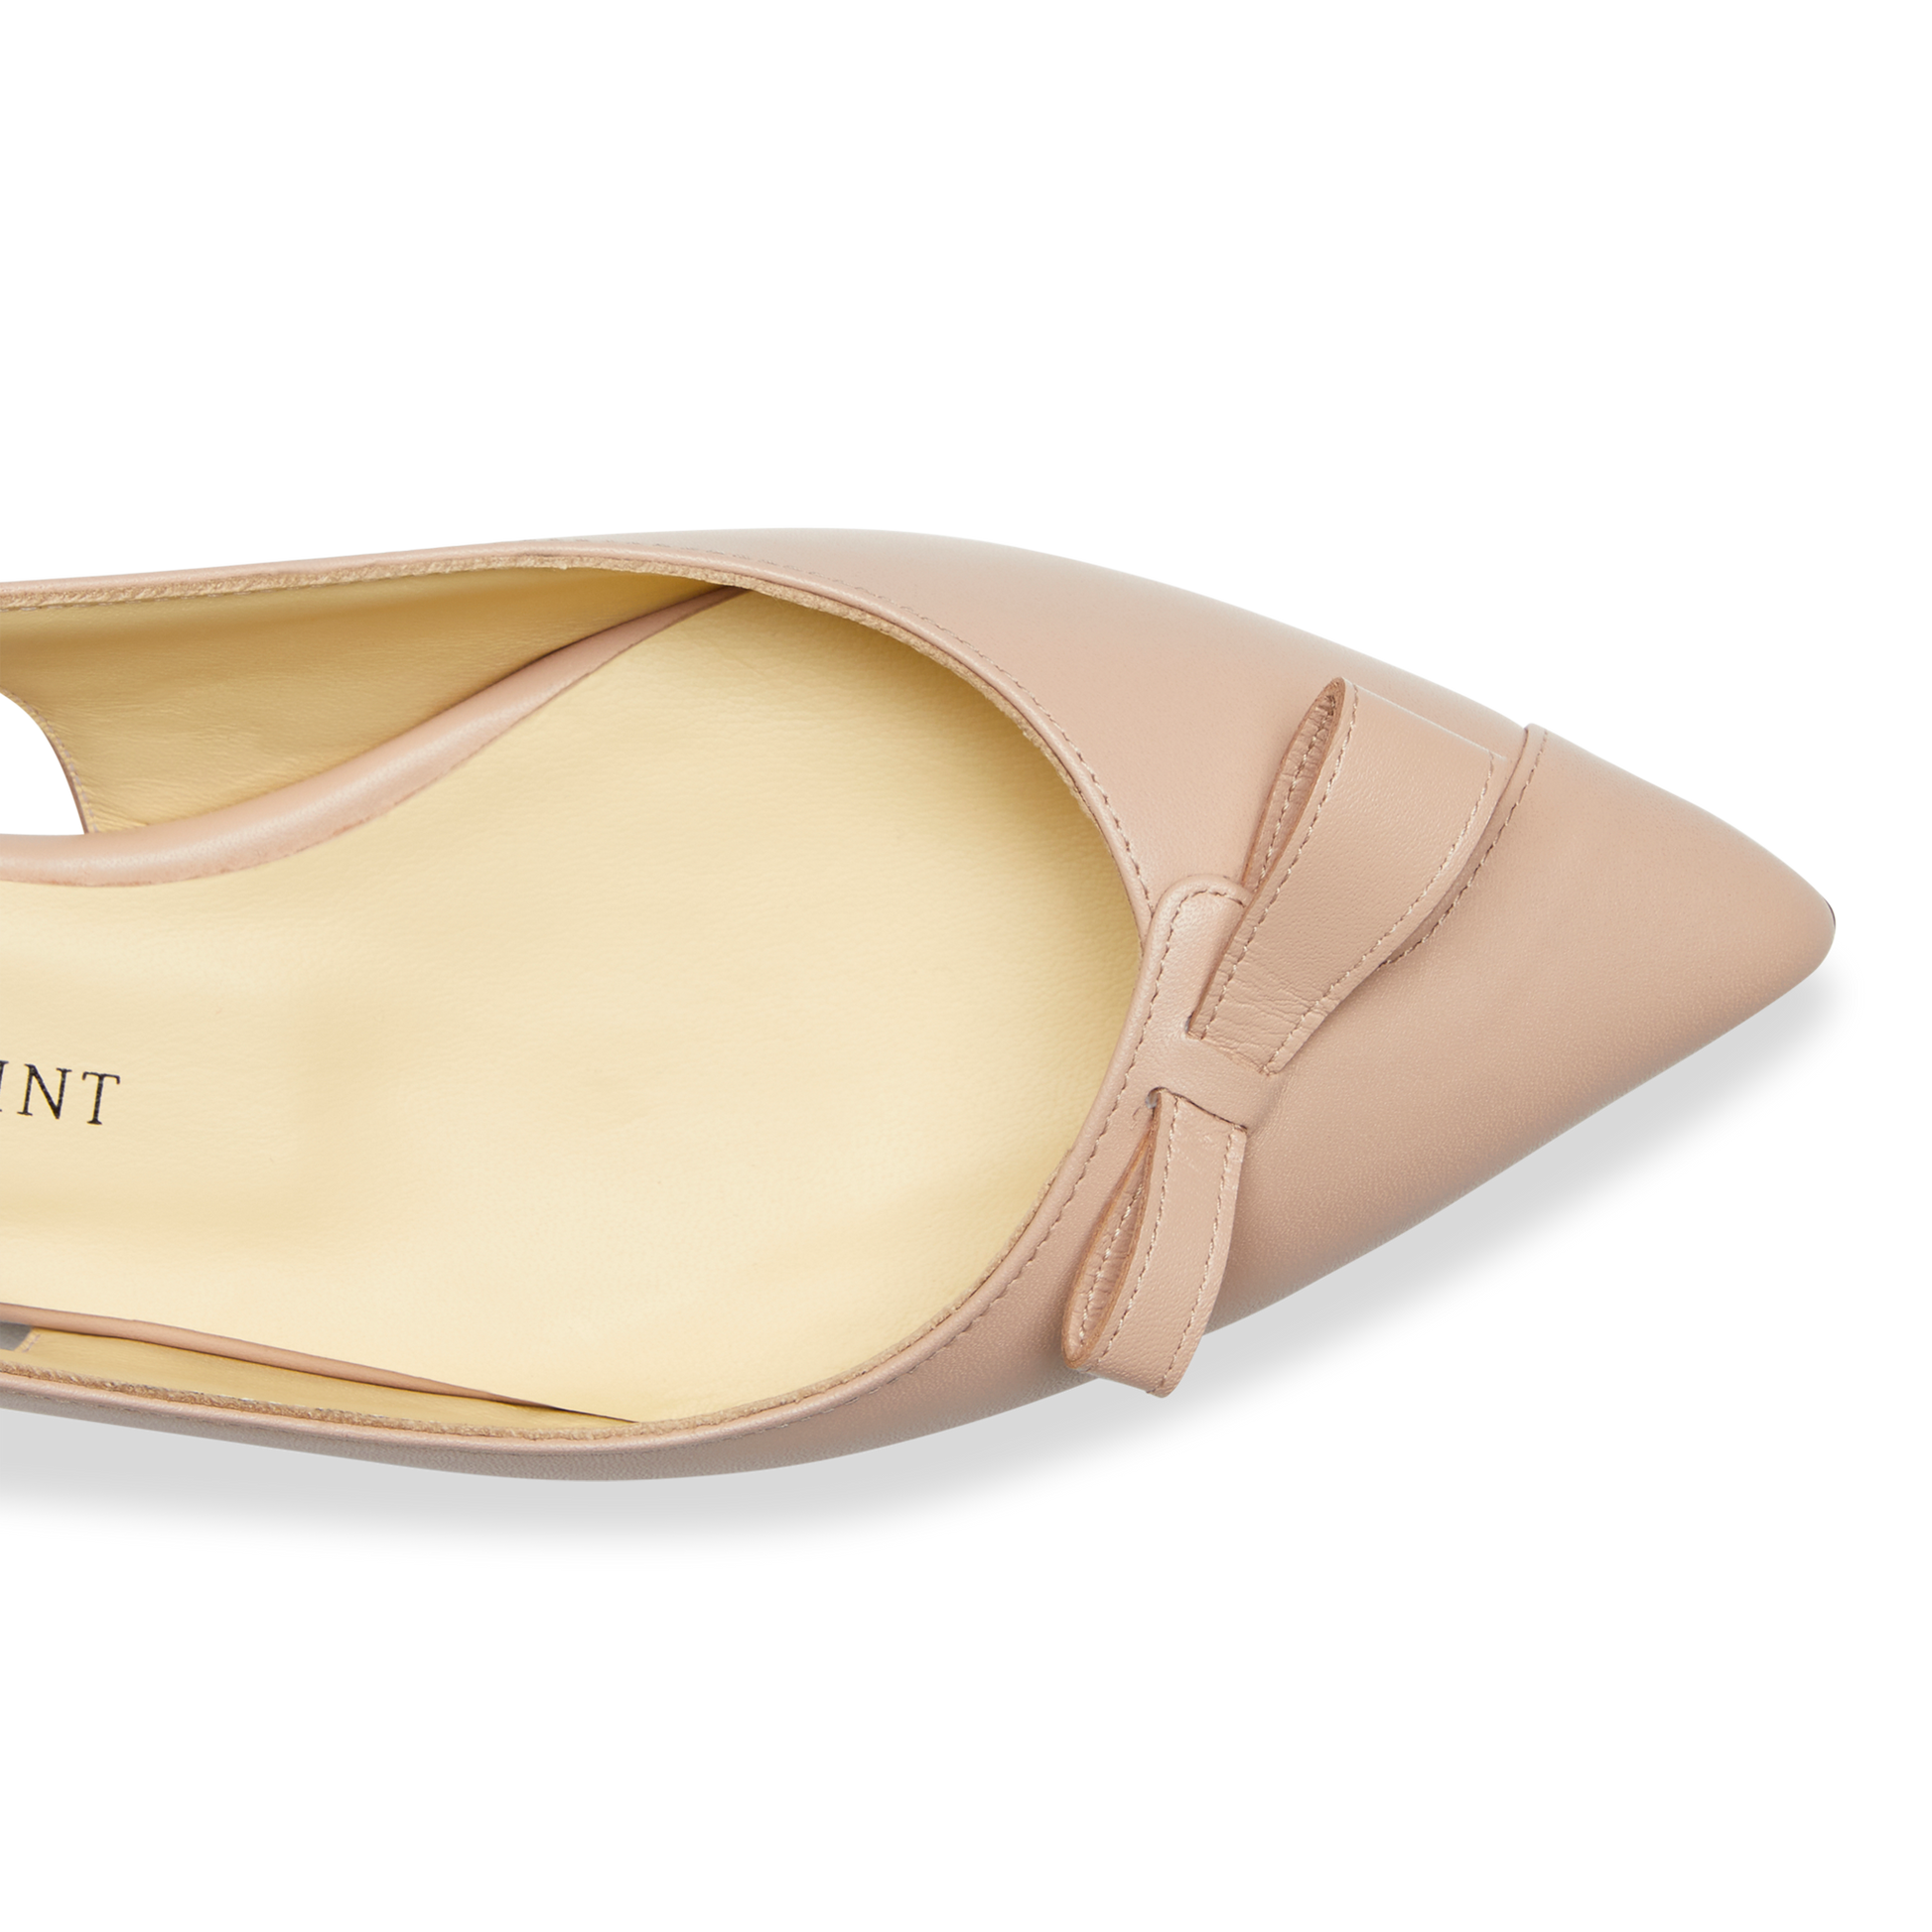 Louis Vuitton Insider Ballet Flat Slingback Ballerina Shoes Sz 39 US 8.5